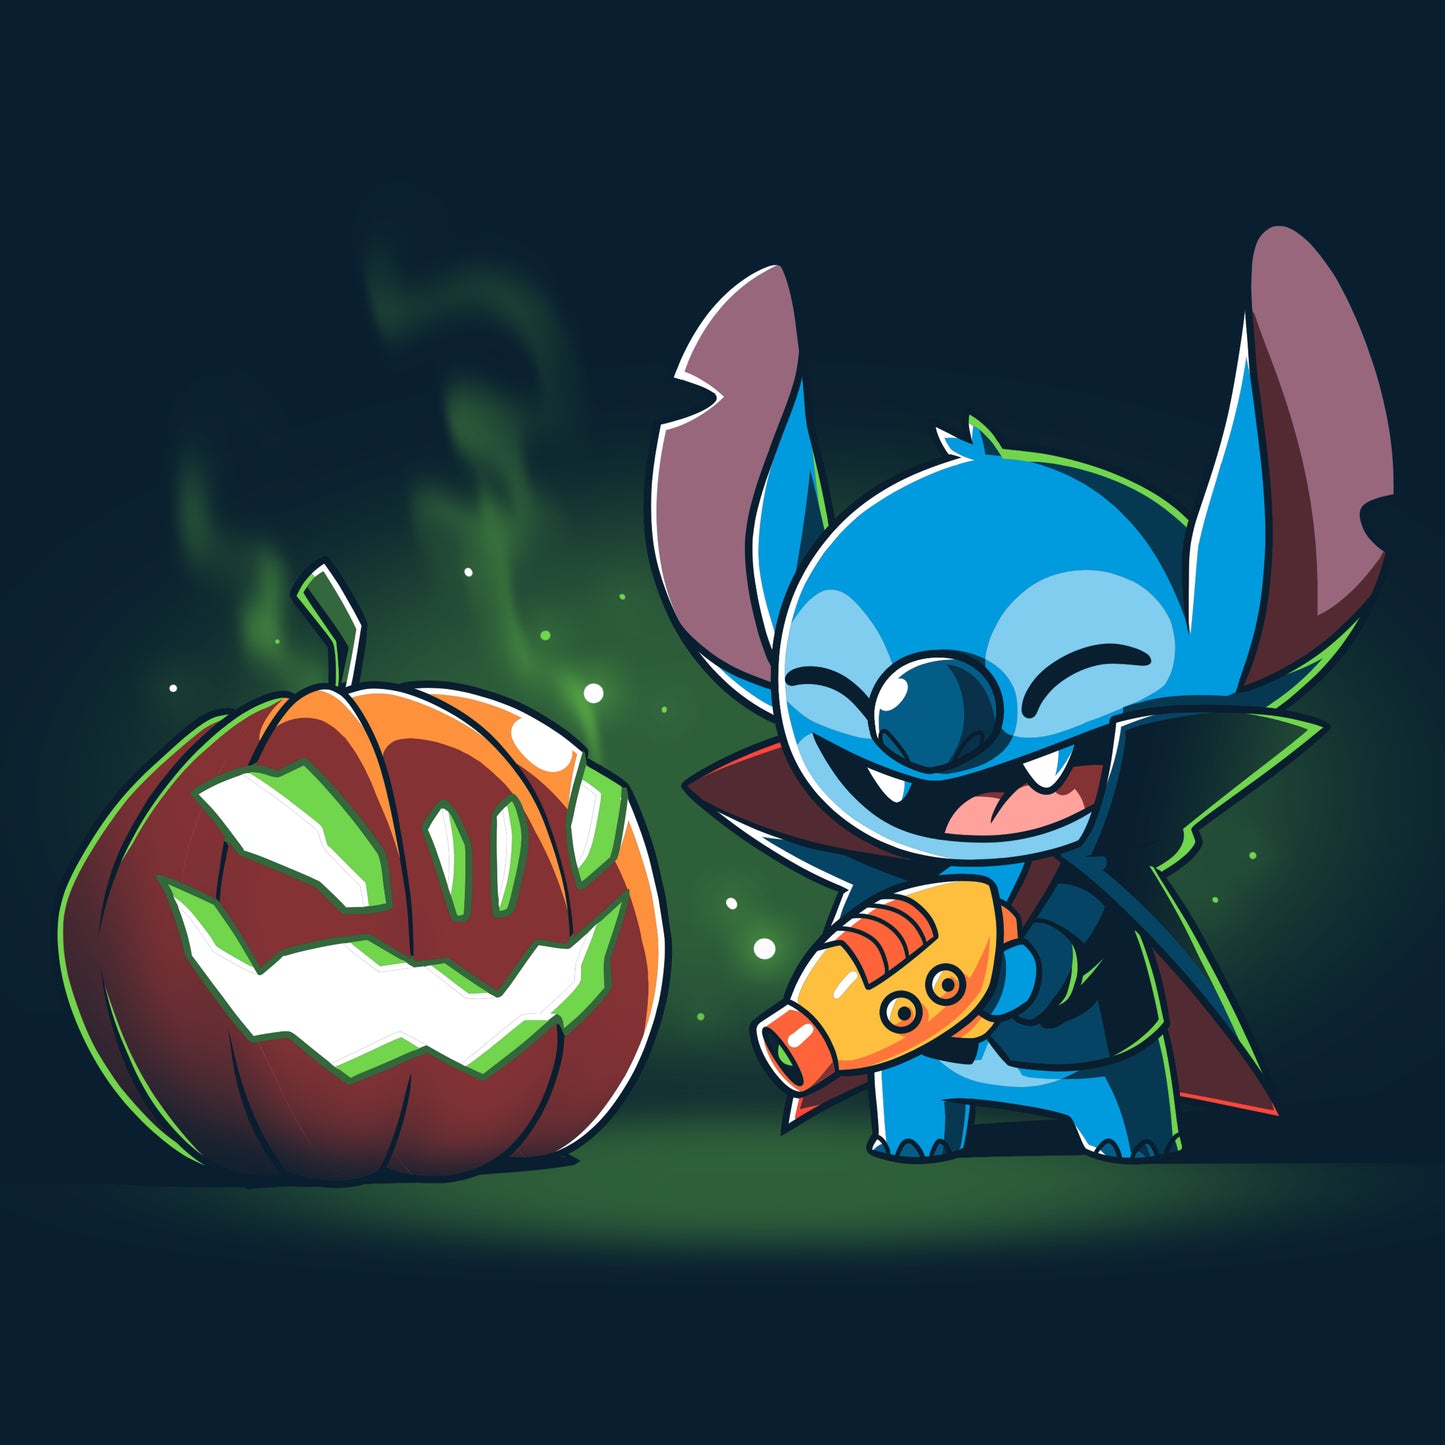 A Disney Stitch's Pumpkin Carving cartoon character with a pumpkin T-shirt.